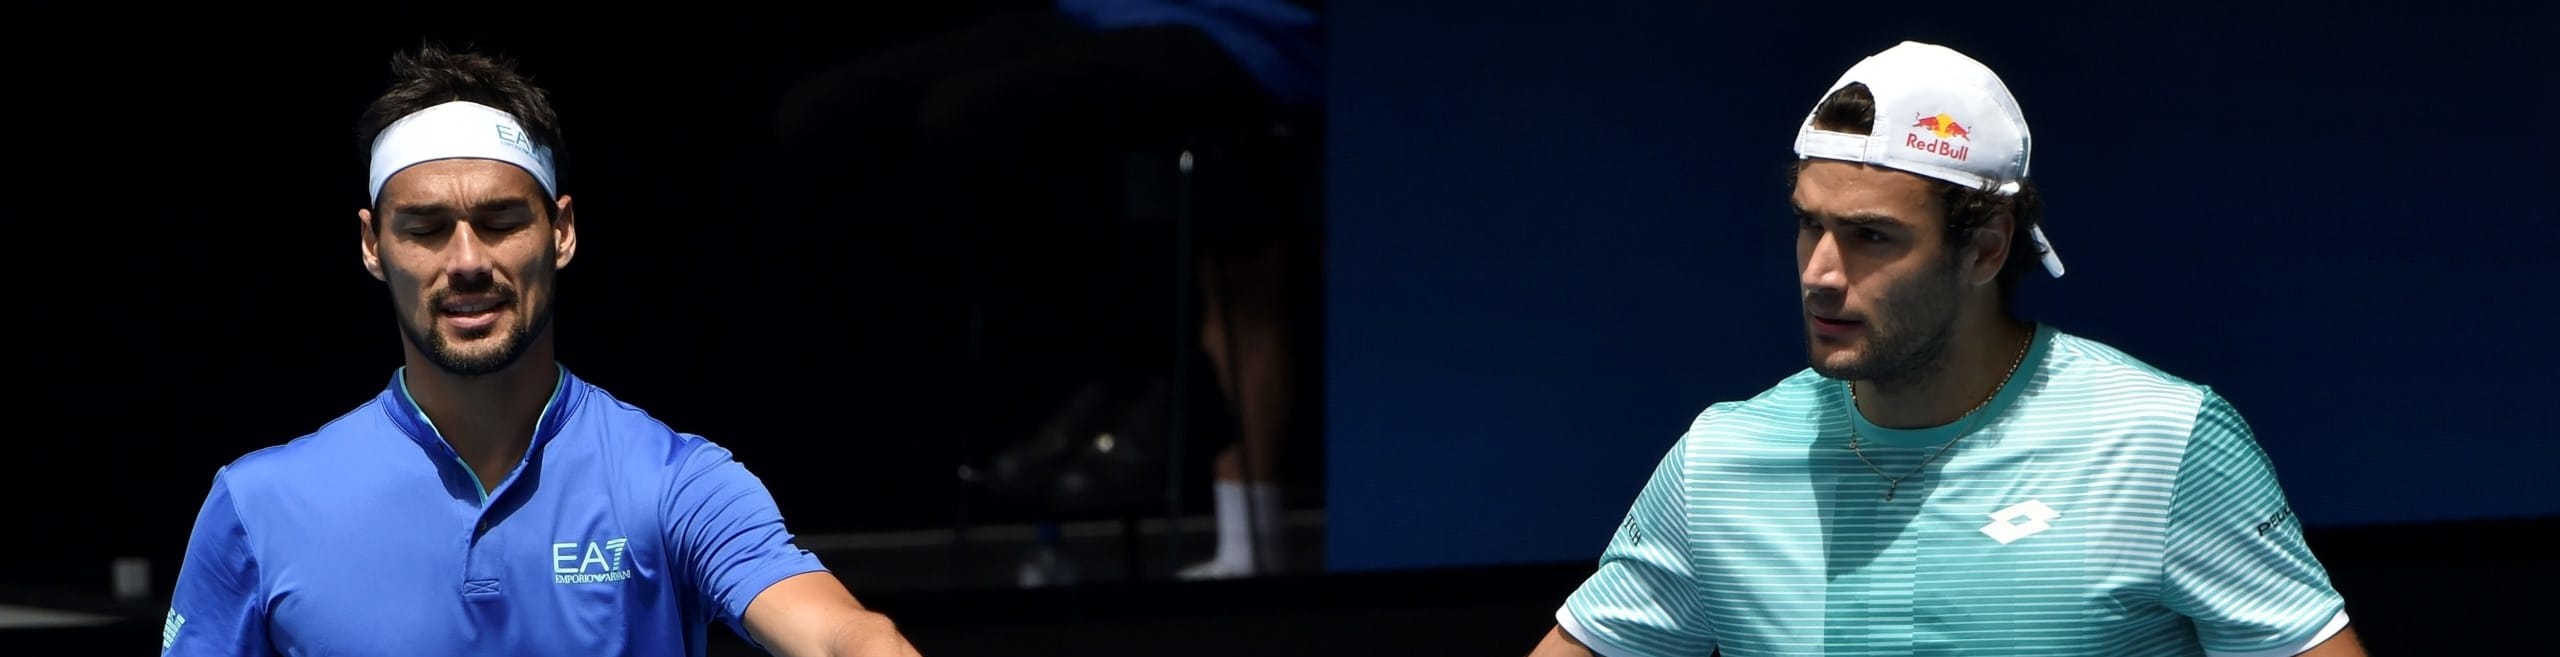 Pronostici Australian Open: Fognini e Berrettini per l'impresa con Rafa e Tsitsi, occasione Muchova